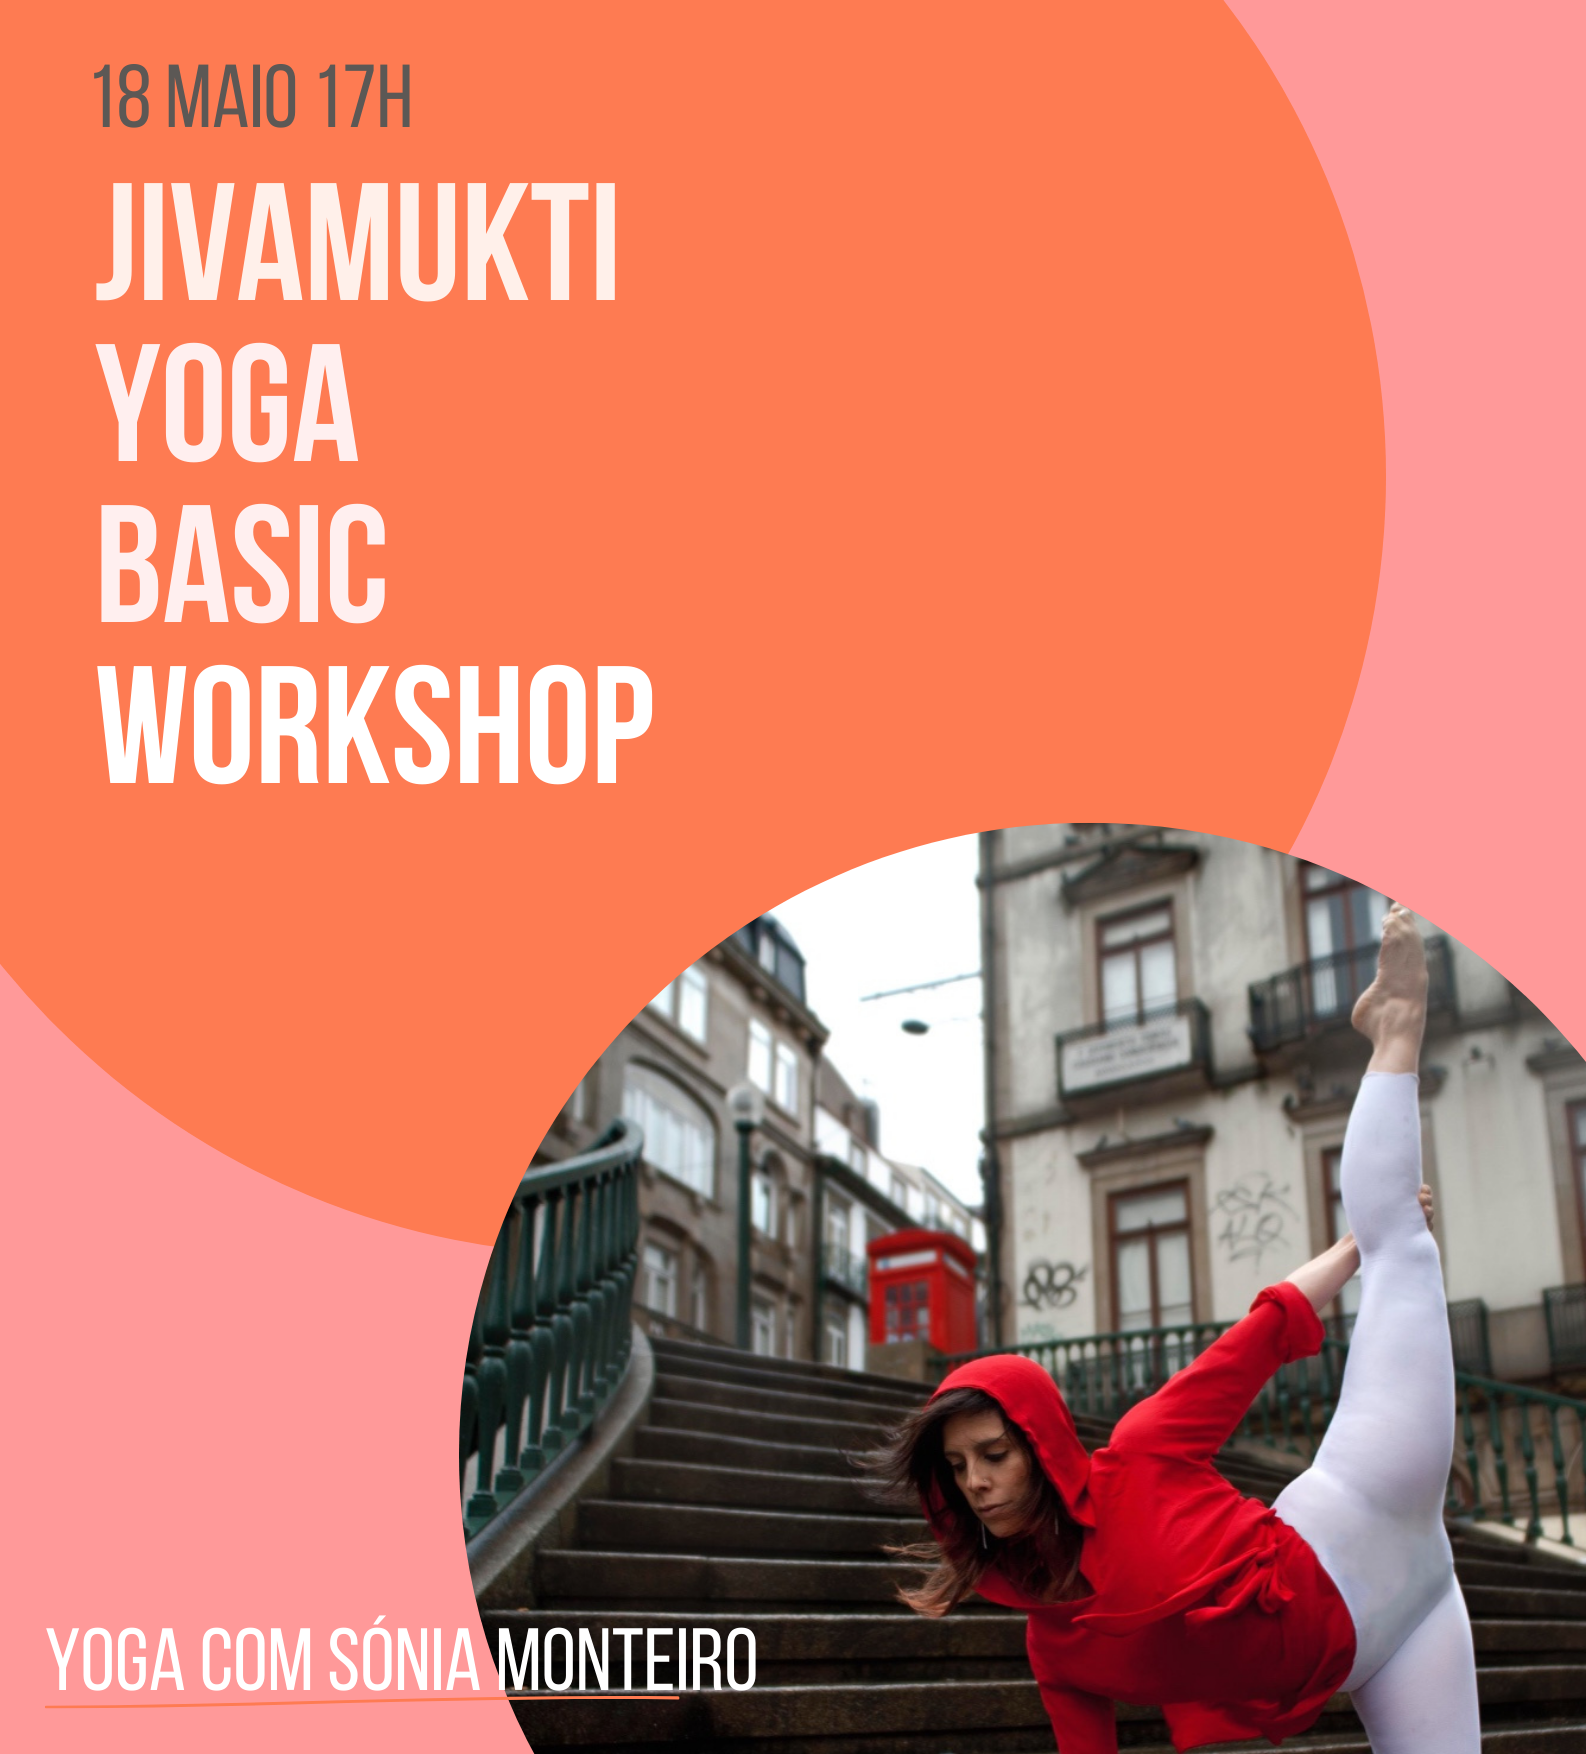 Jivamukti yoga Sonia Monteiro FreeFlow 18 de maio